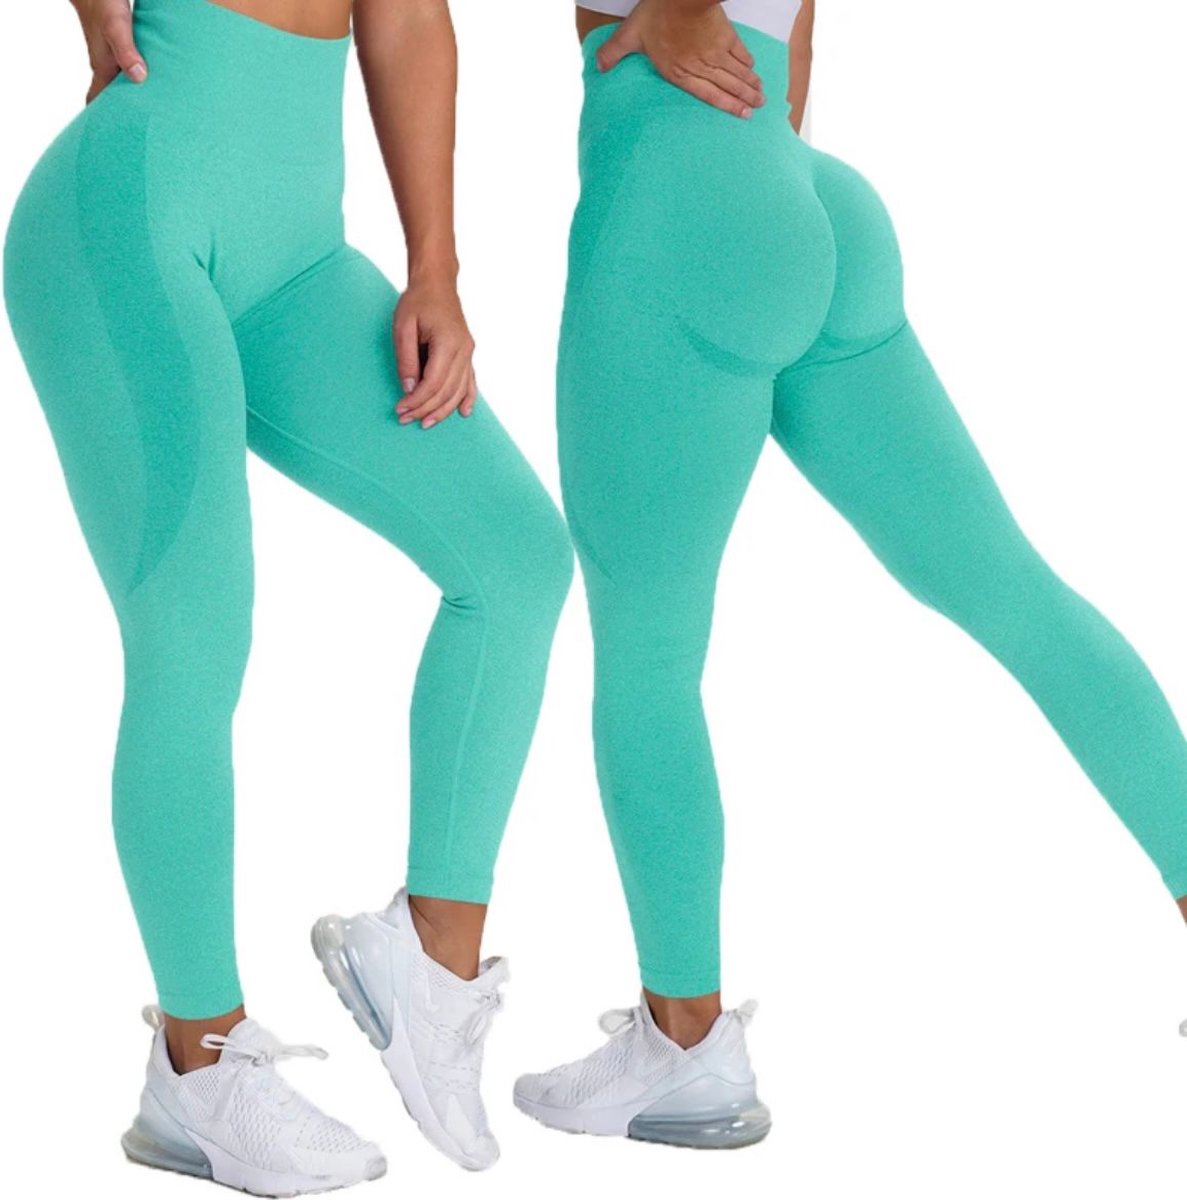 Gymlegging BUTTLIFT - Maat S - Turquoise - Groen - Pushup Legging - Fitness Legging - Sportlegging - Sportkleding - Yoga legging